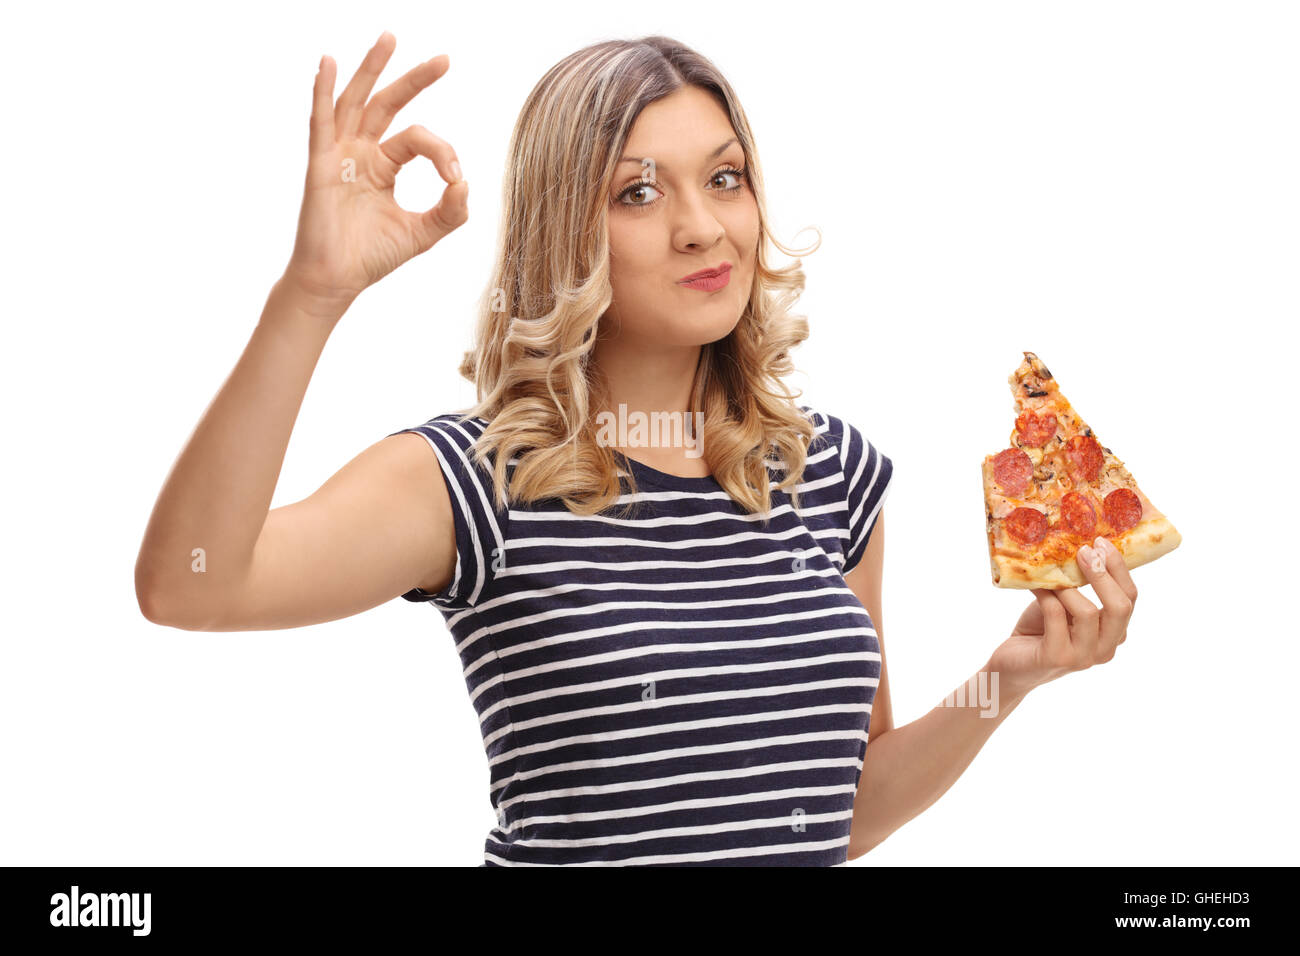 Junge, blonde Frau Essen ein Stück Pizza und macht eine Ordnung Geste mit der Hand isoliert auf weißem Hintergrund Stockfoto